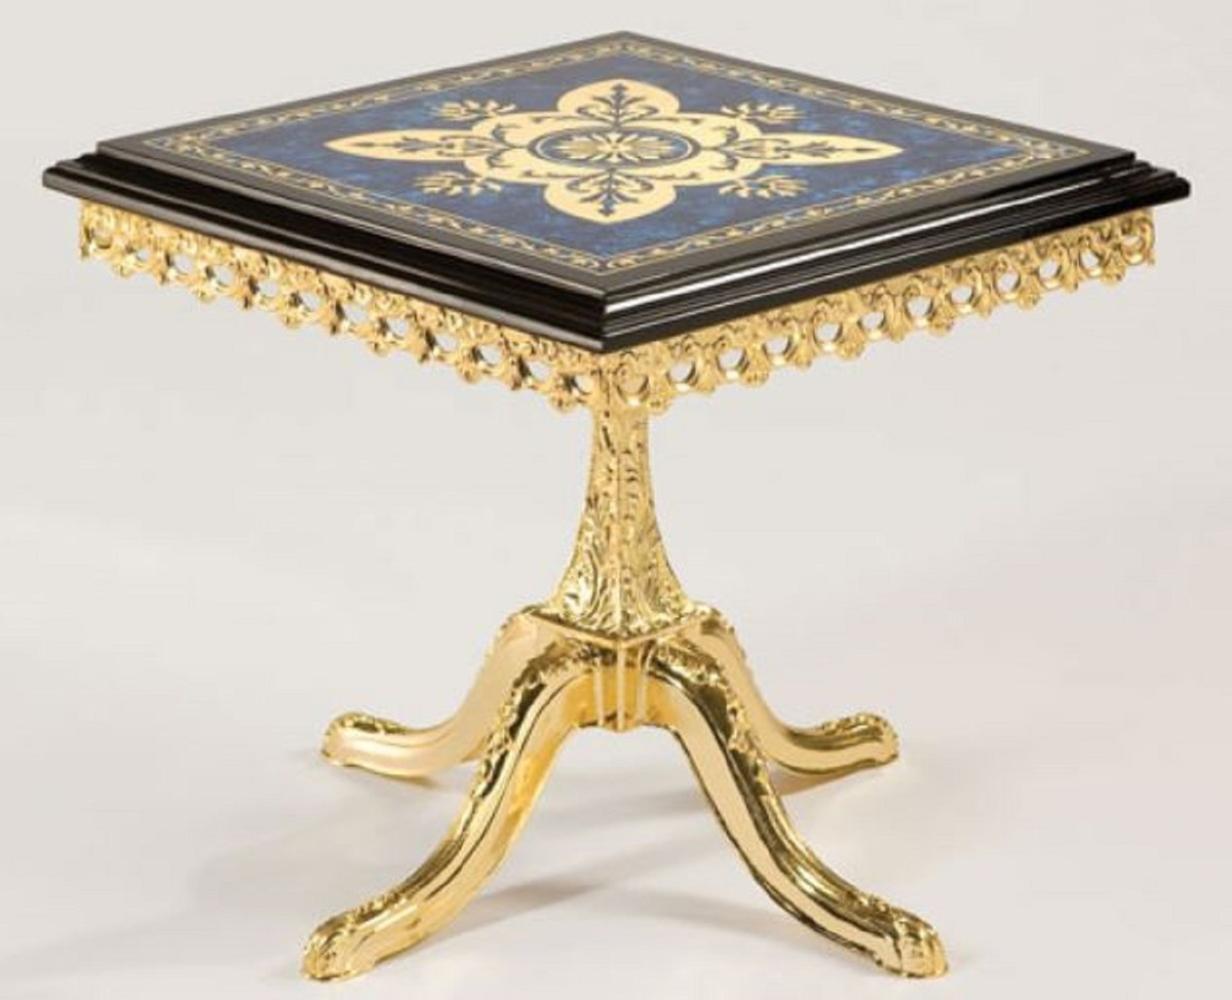 Casa Padrino Luxus Barock Beistelltisch Schwarz / Blau / Gold 53 x 53 x H. 50 cm - Edler Messing Tisch mit Massivholz Tischplatte - Barock Wohnzimmer Möbel Bild 1